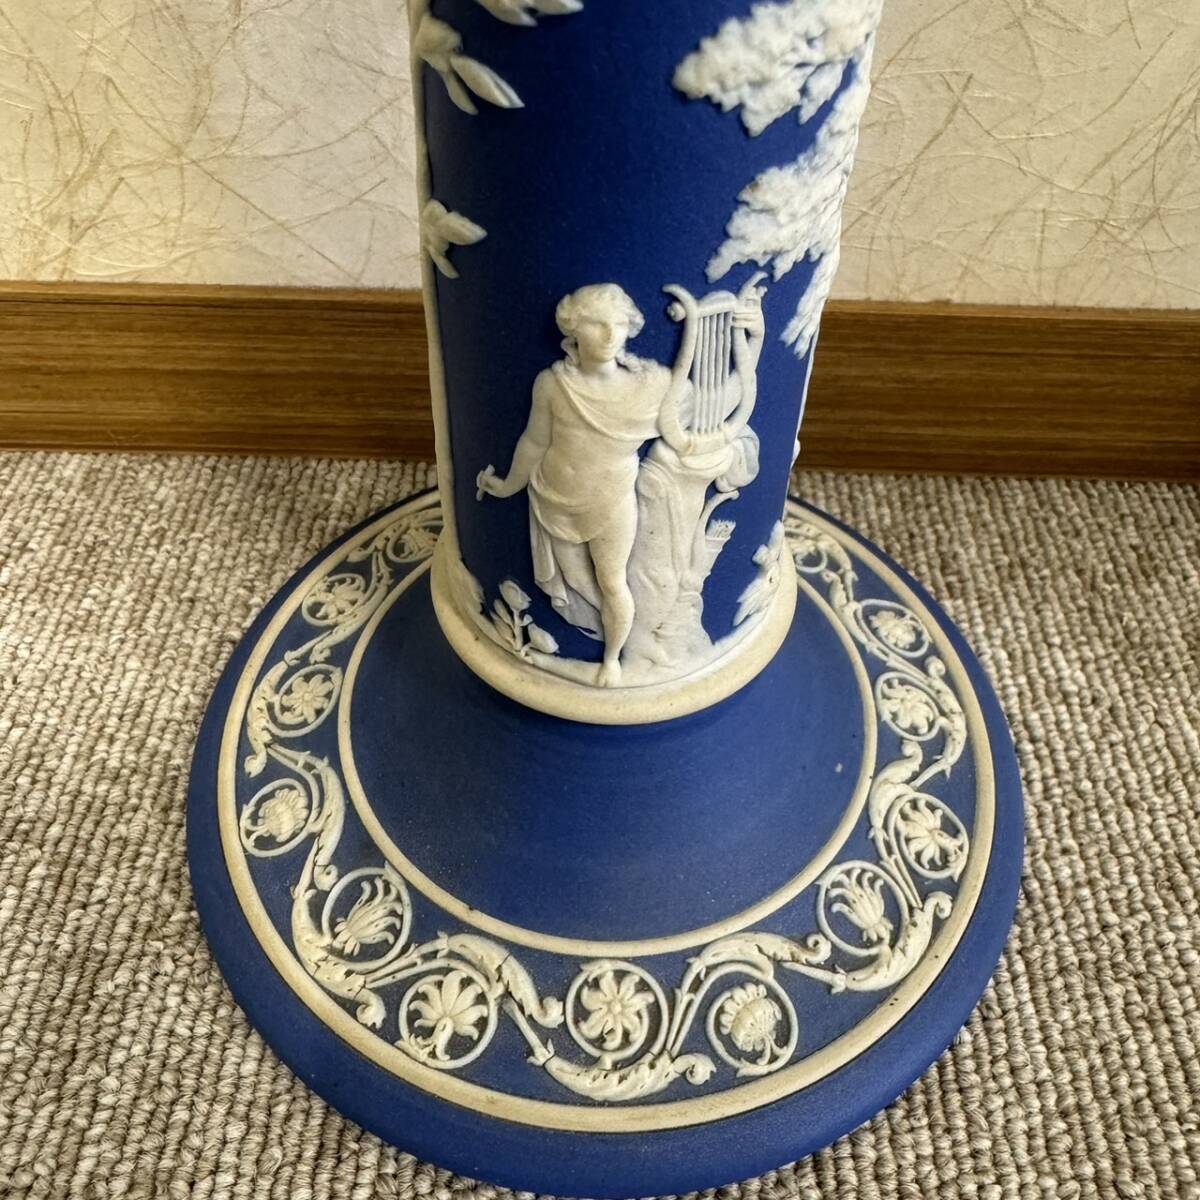 [ART-3074a]WEDGWOOD Wedgwood jasper свеча подставка свеча держатель low sok 1 шт. установить Vintage коллекция 